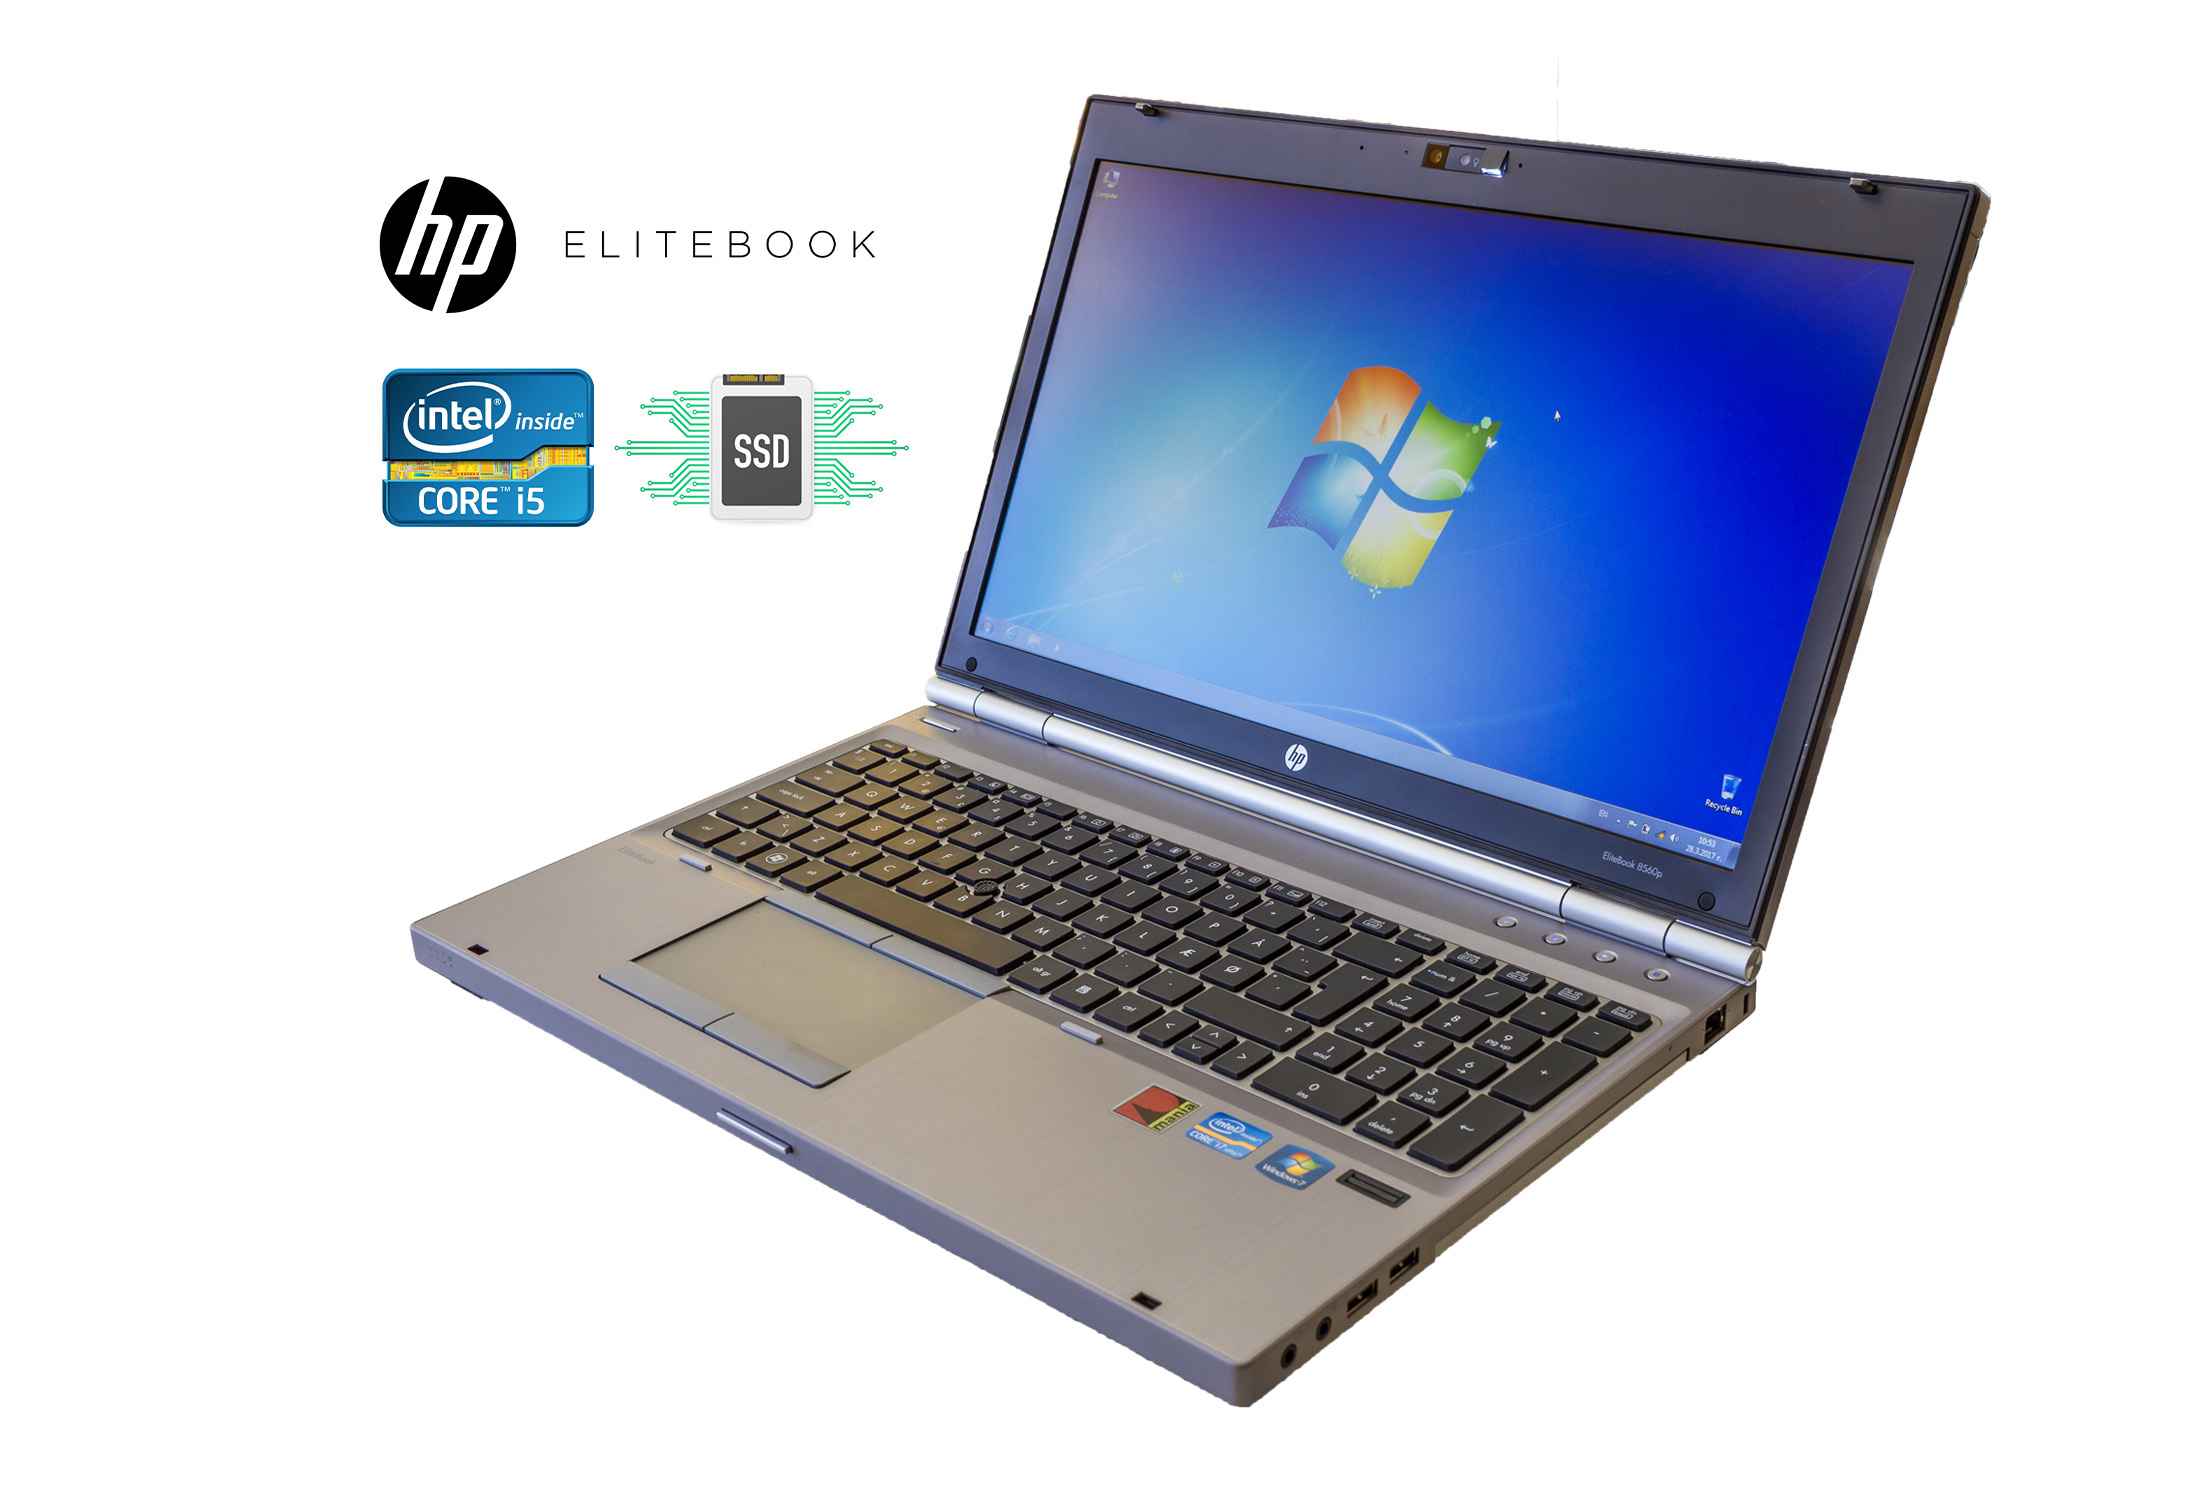 HP Elitebook 8560p i5-2520M 8GB RAM 256GB SSD 1600x900 Camera